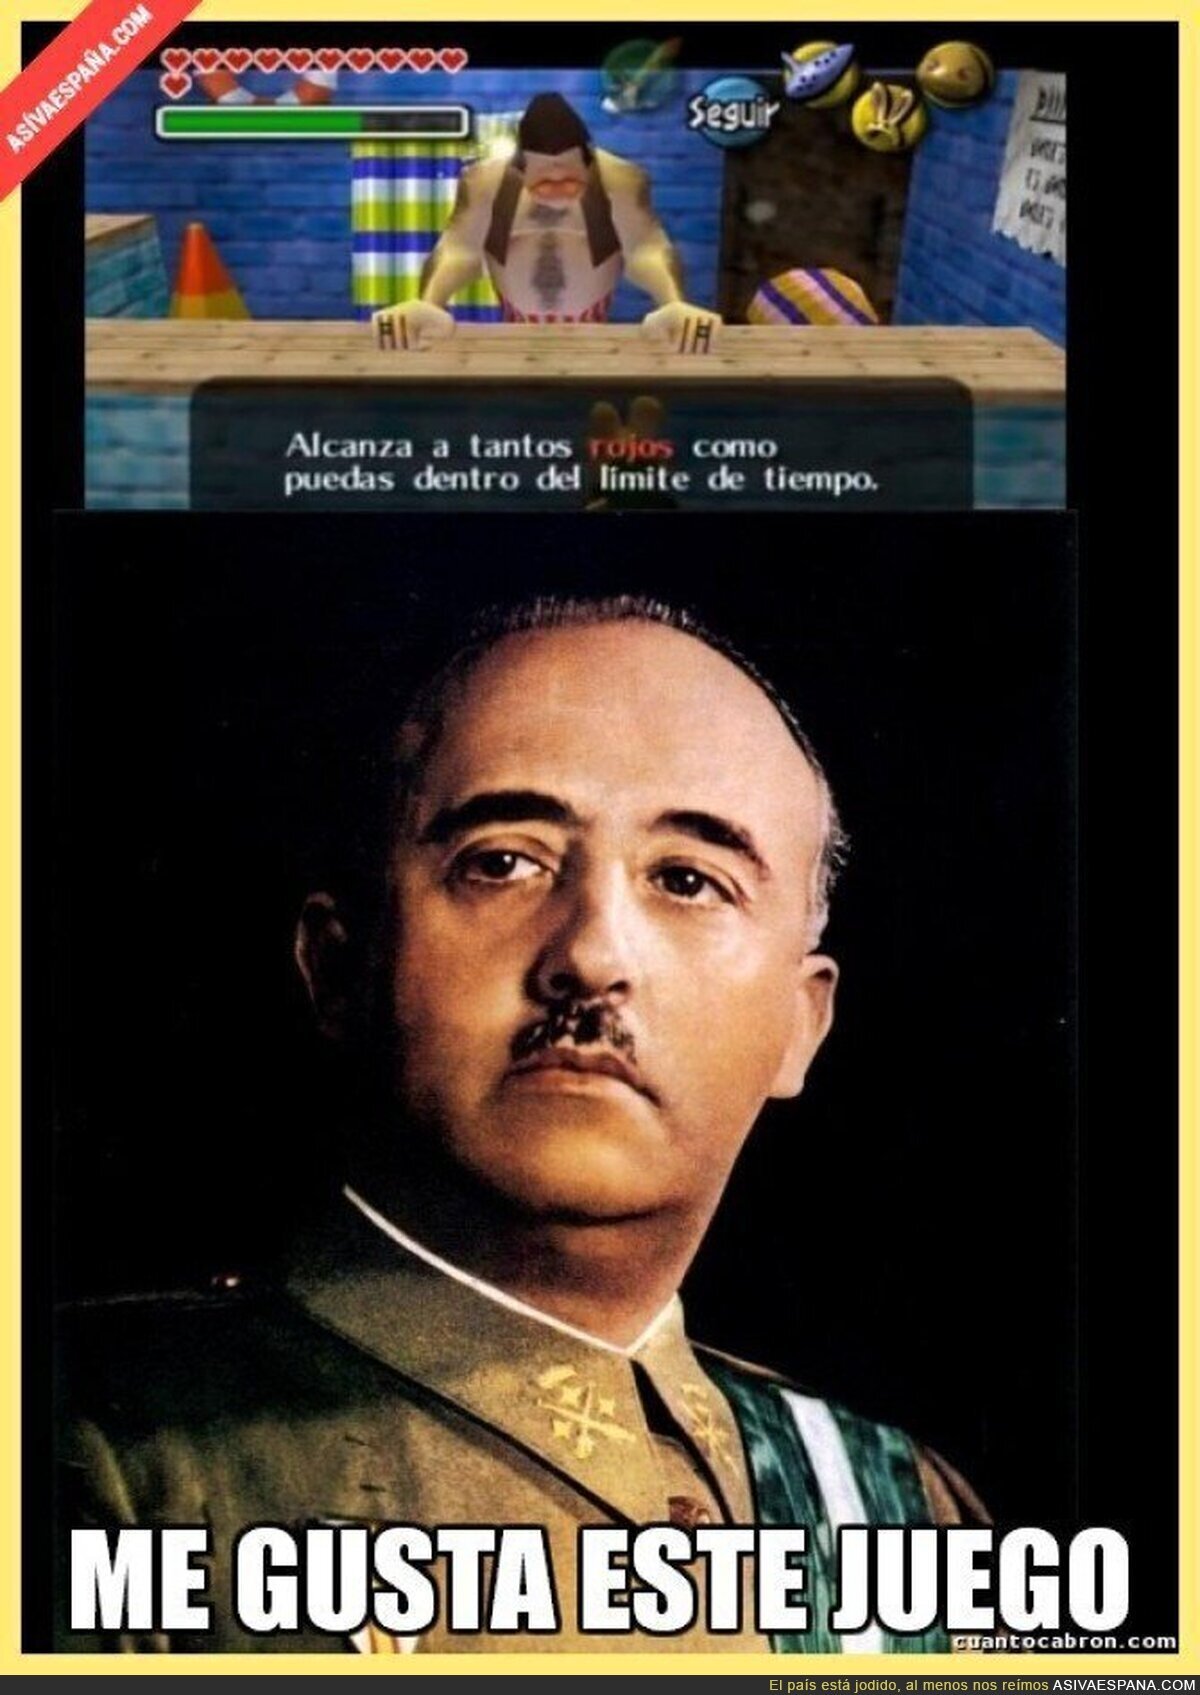 El videojuego favorito de Franco